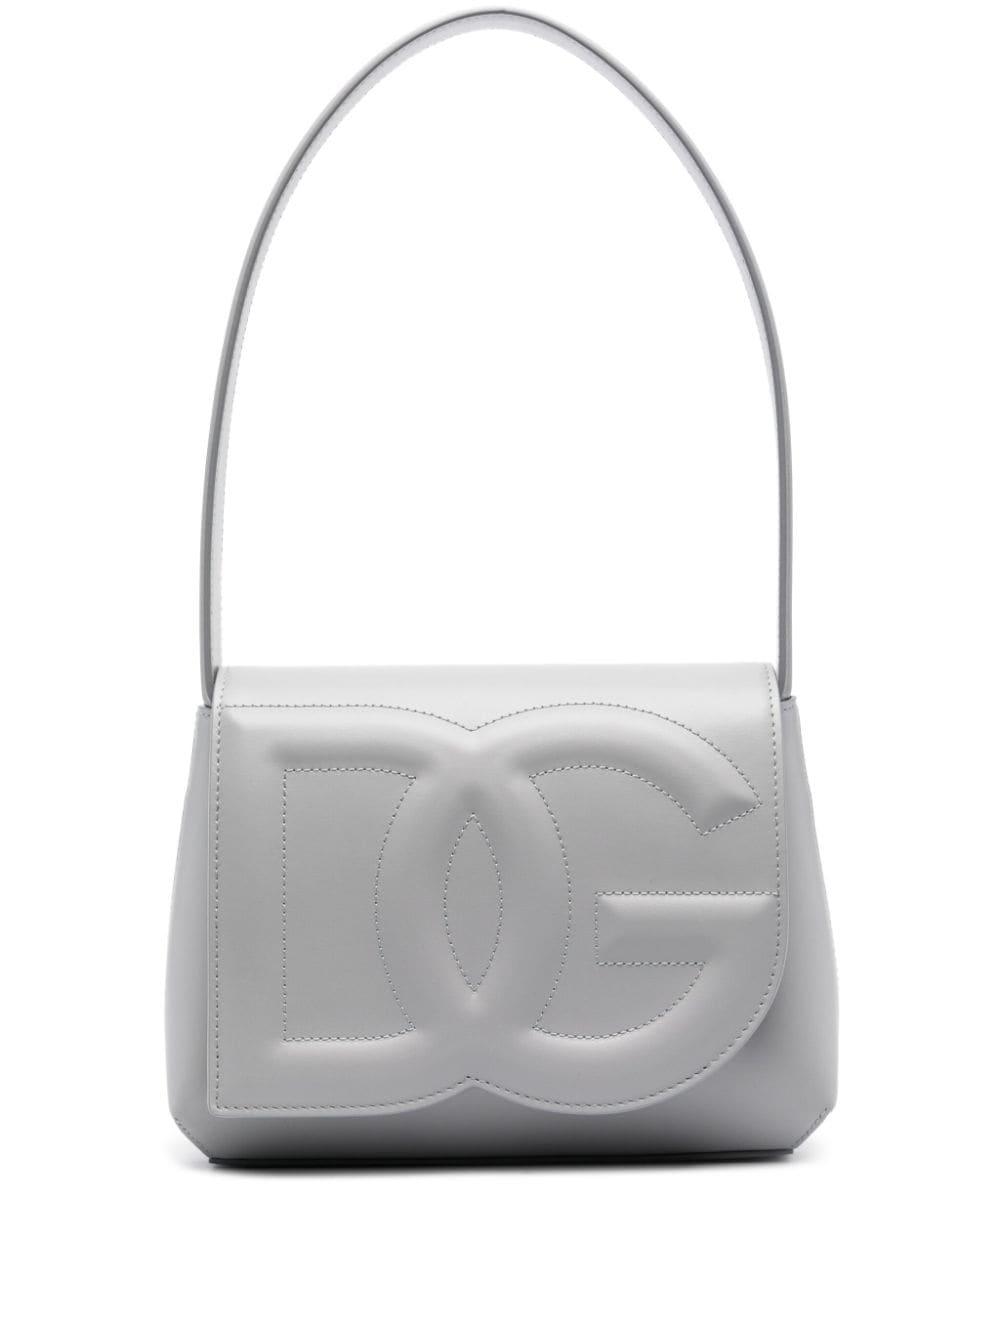 Dolce & Gabbana Logo Leather Shoulder Bag in Gray